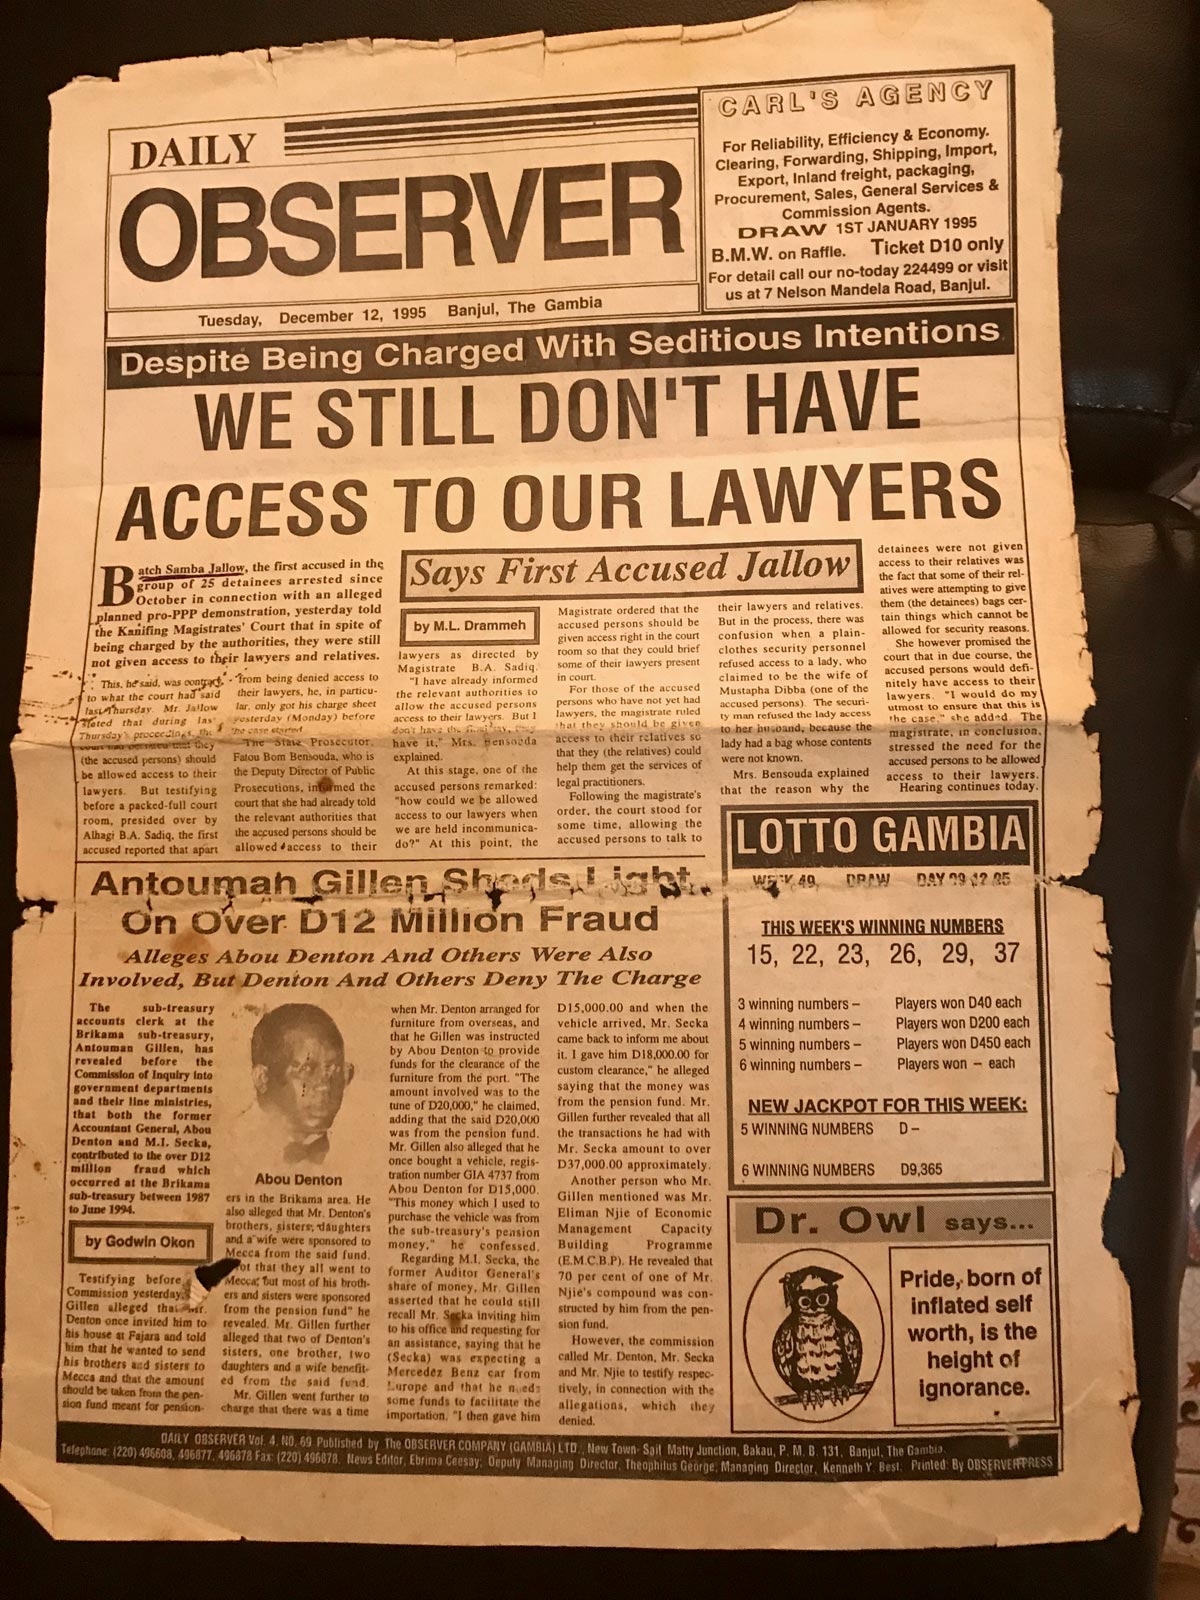 Photo du journal gambien The Observer, daté du 12 décembre 1995, titrant : We still don't have access to our lawyers - Nous n'avons toujours pas accès à nos avocats